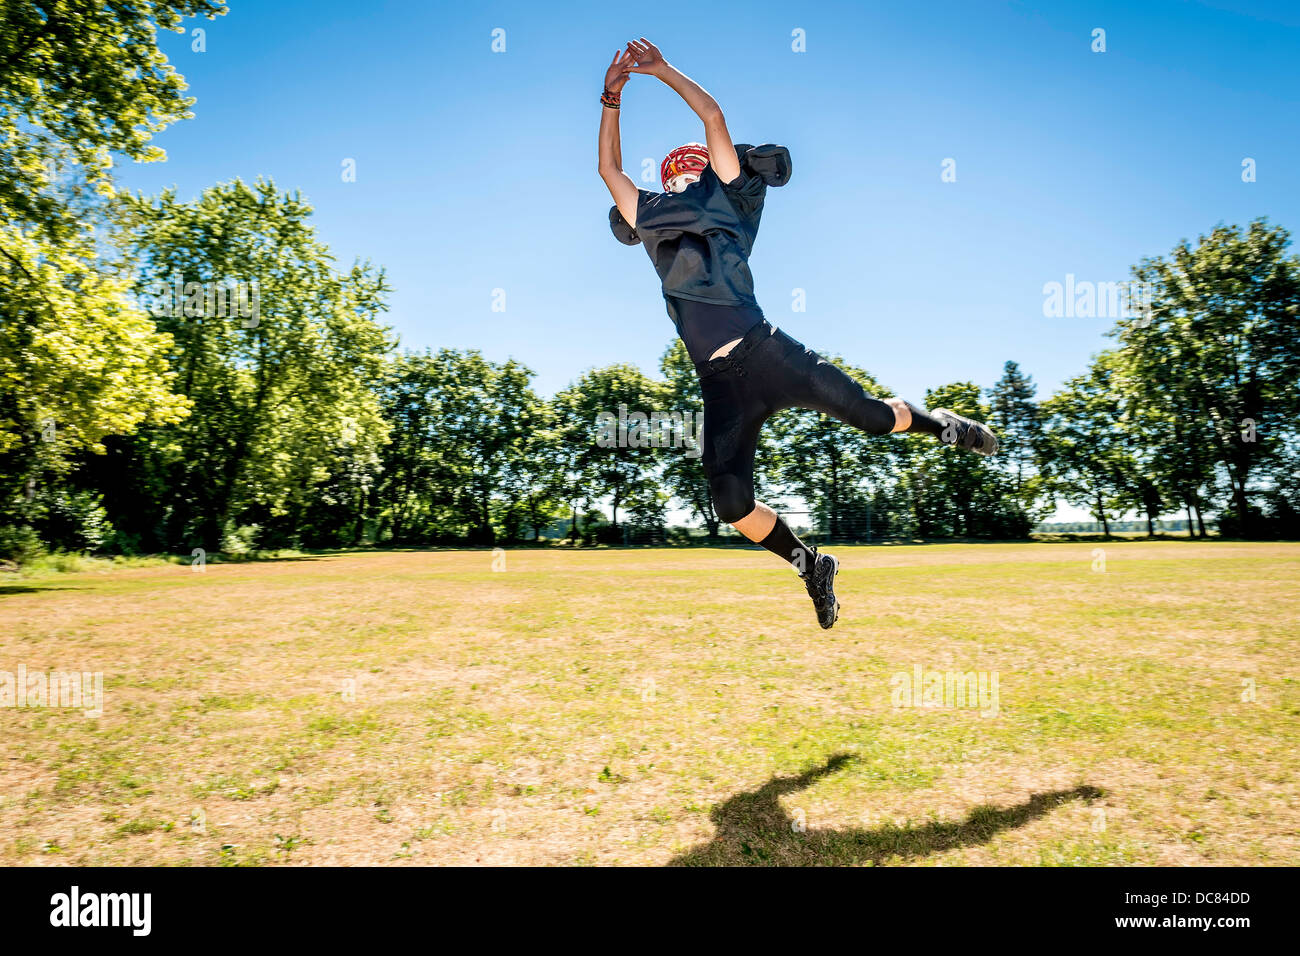 Bild von einer springenden American-Football-Spieler Stockfoto